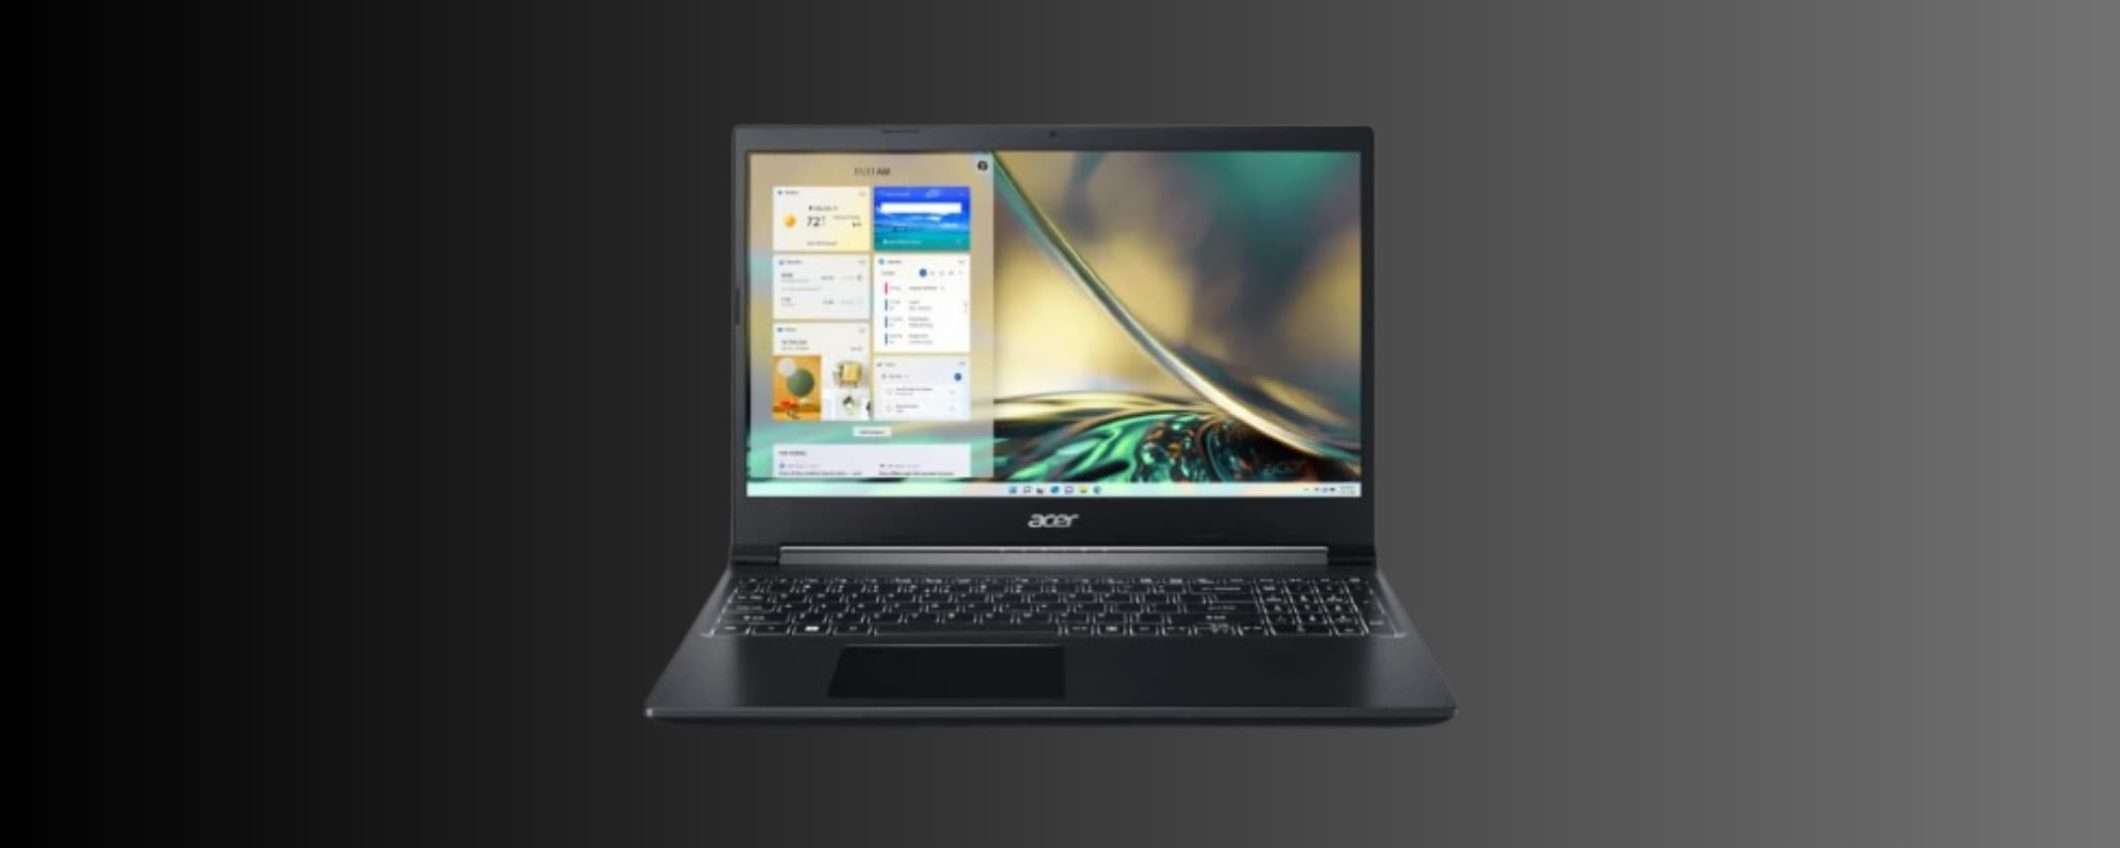 Acer Aspire 7: sconto clamoroso di 500 euro a carrello (anche in 3 rate)